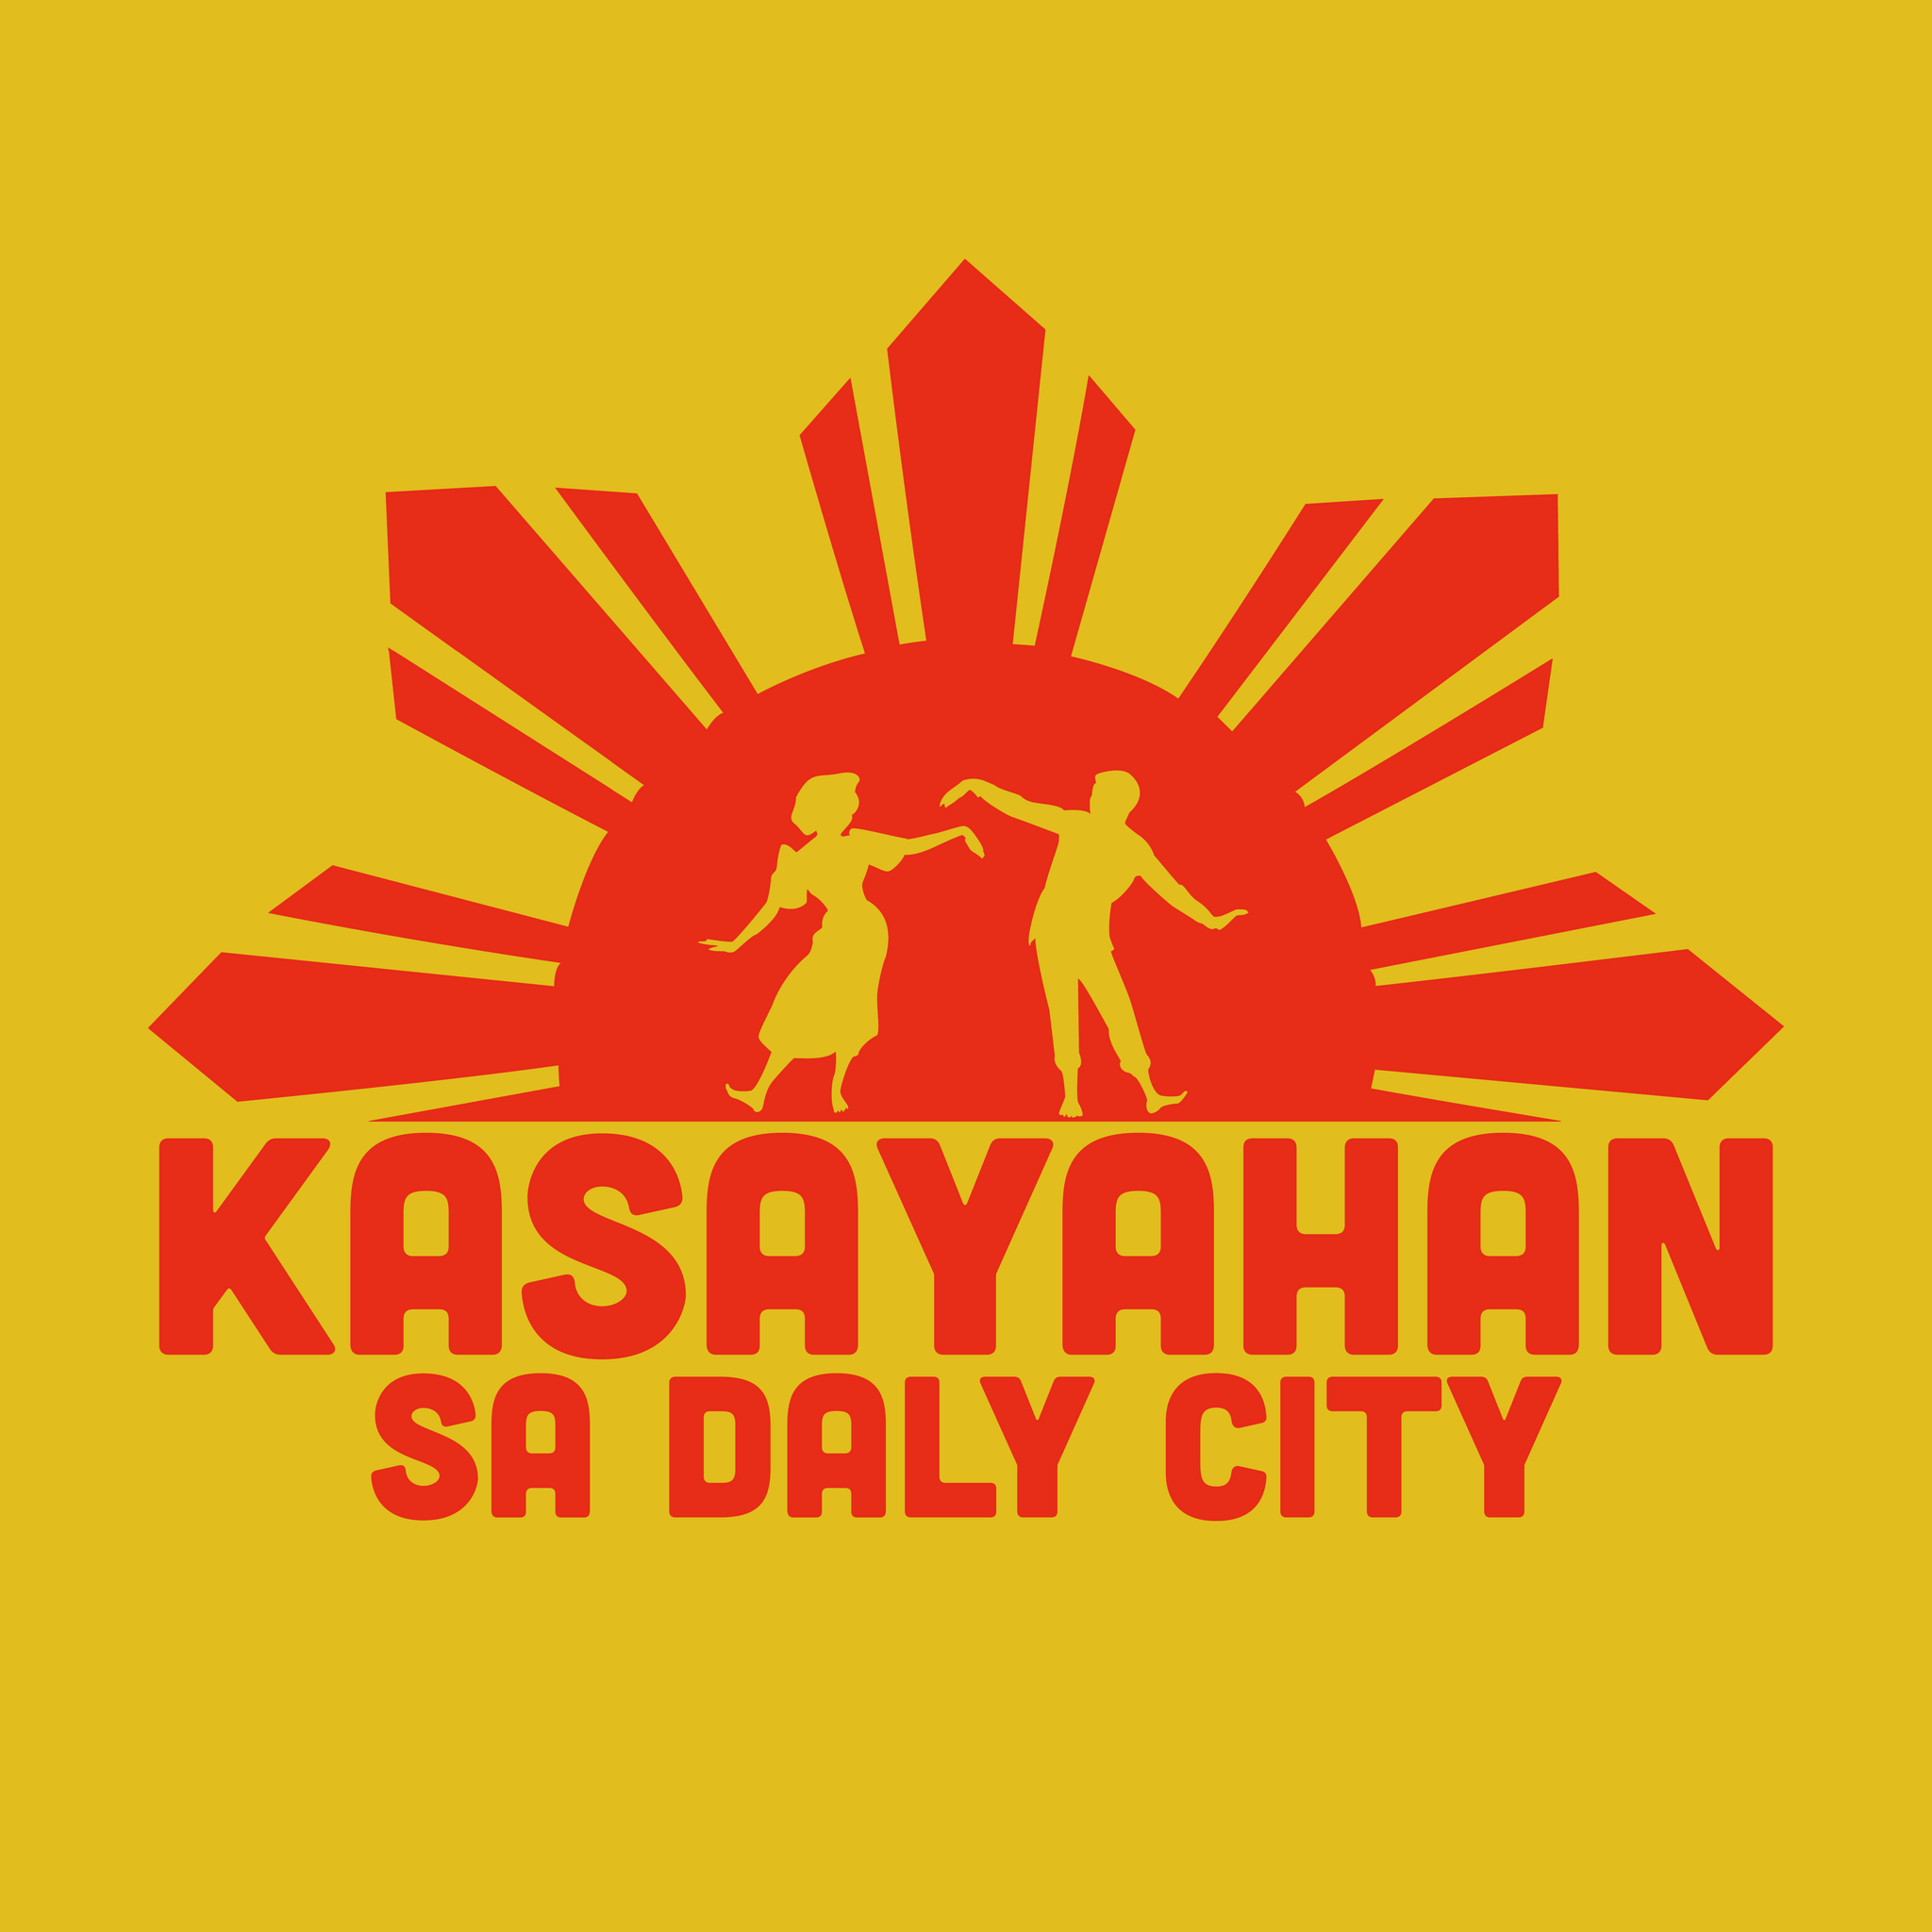 Kasayahan Sa Daly City Filipino American History Month Celebration